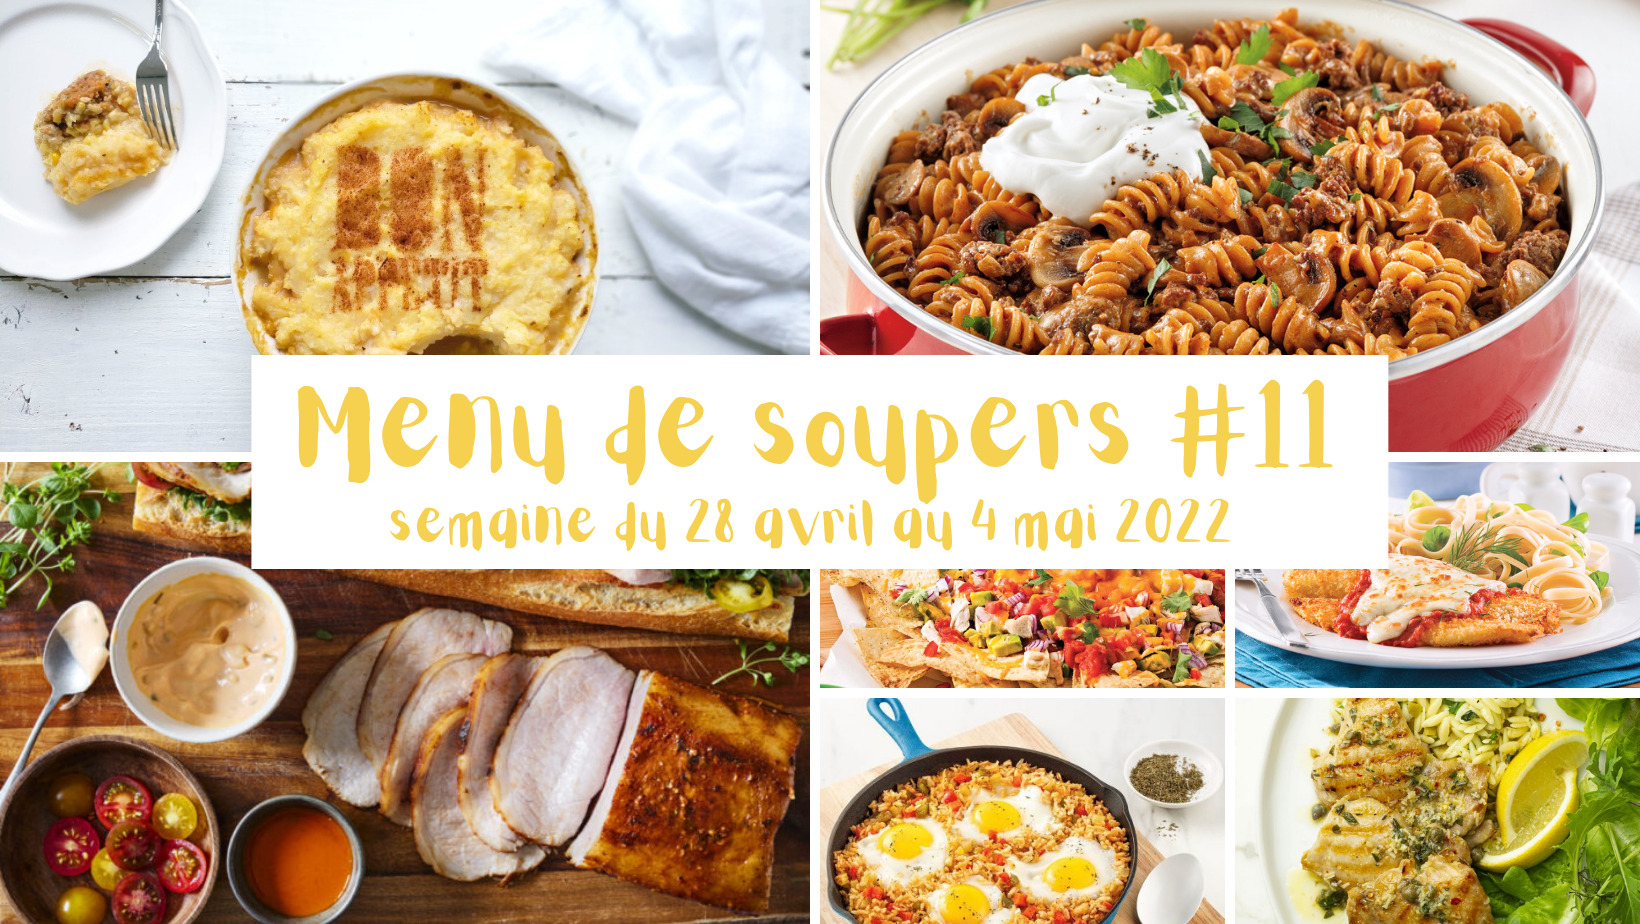 menu-soupers-11-wooloo_entête